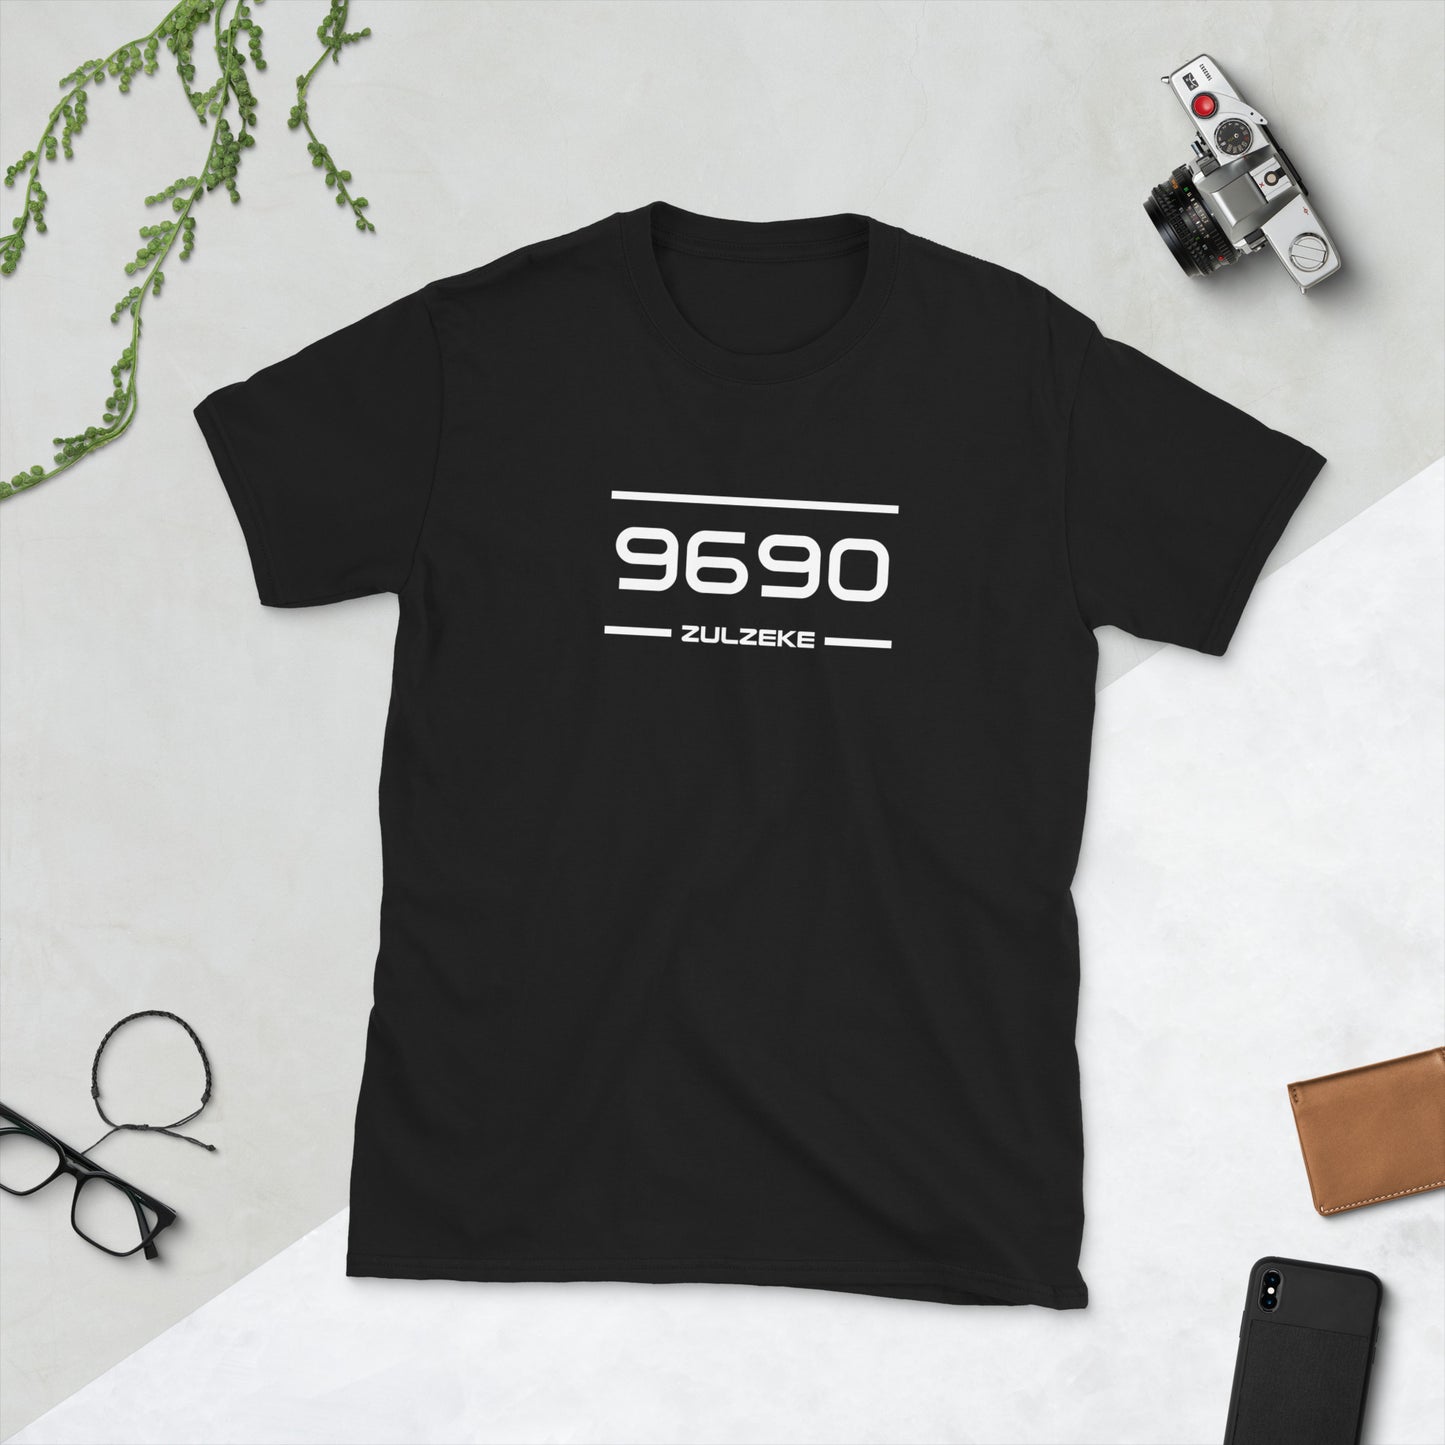 T-Shirt - 9690 - Zulzeke